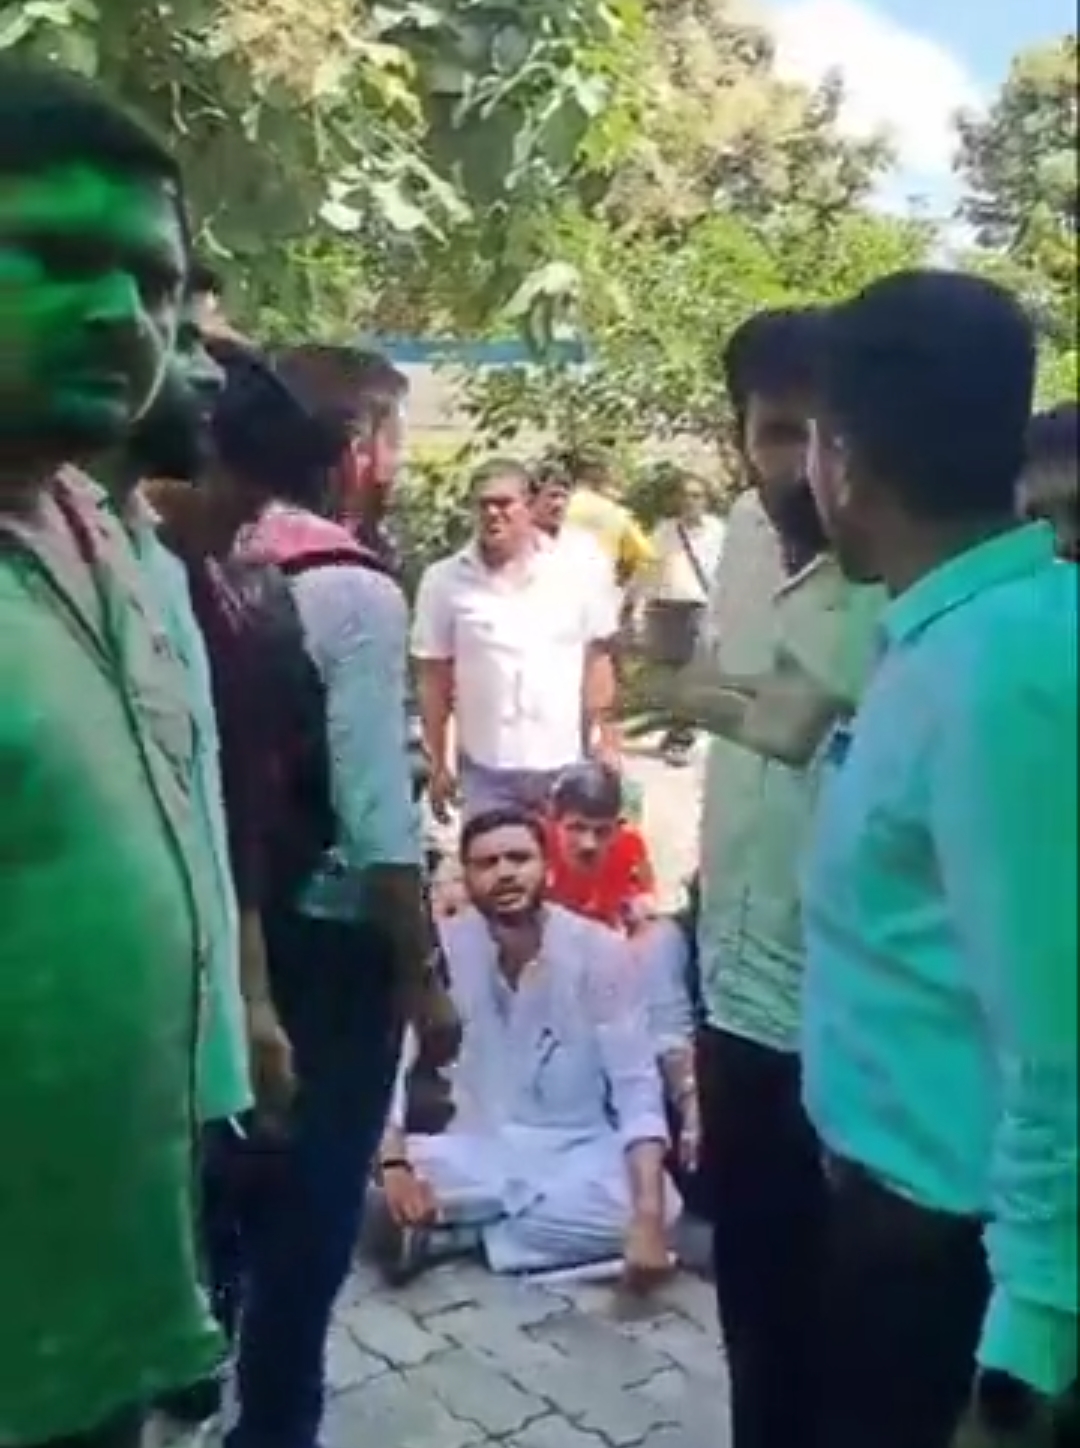 मुख्यमंत्री योगी आदित्यनाथ को काला गुब्बारा दिखाने की कोशिश में छात्र नेता गिरफ्तार, छात्र नेताओं ने किया छात्र संघ बहाली की मांग